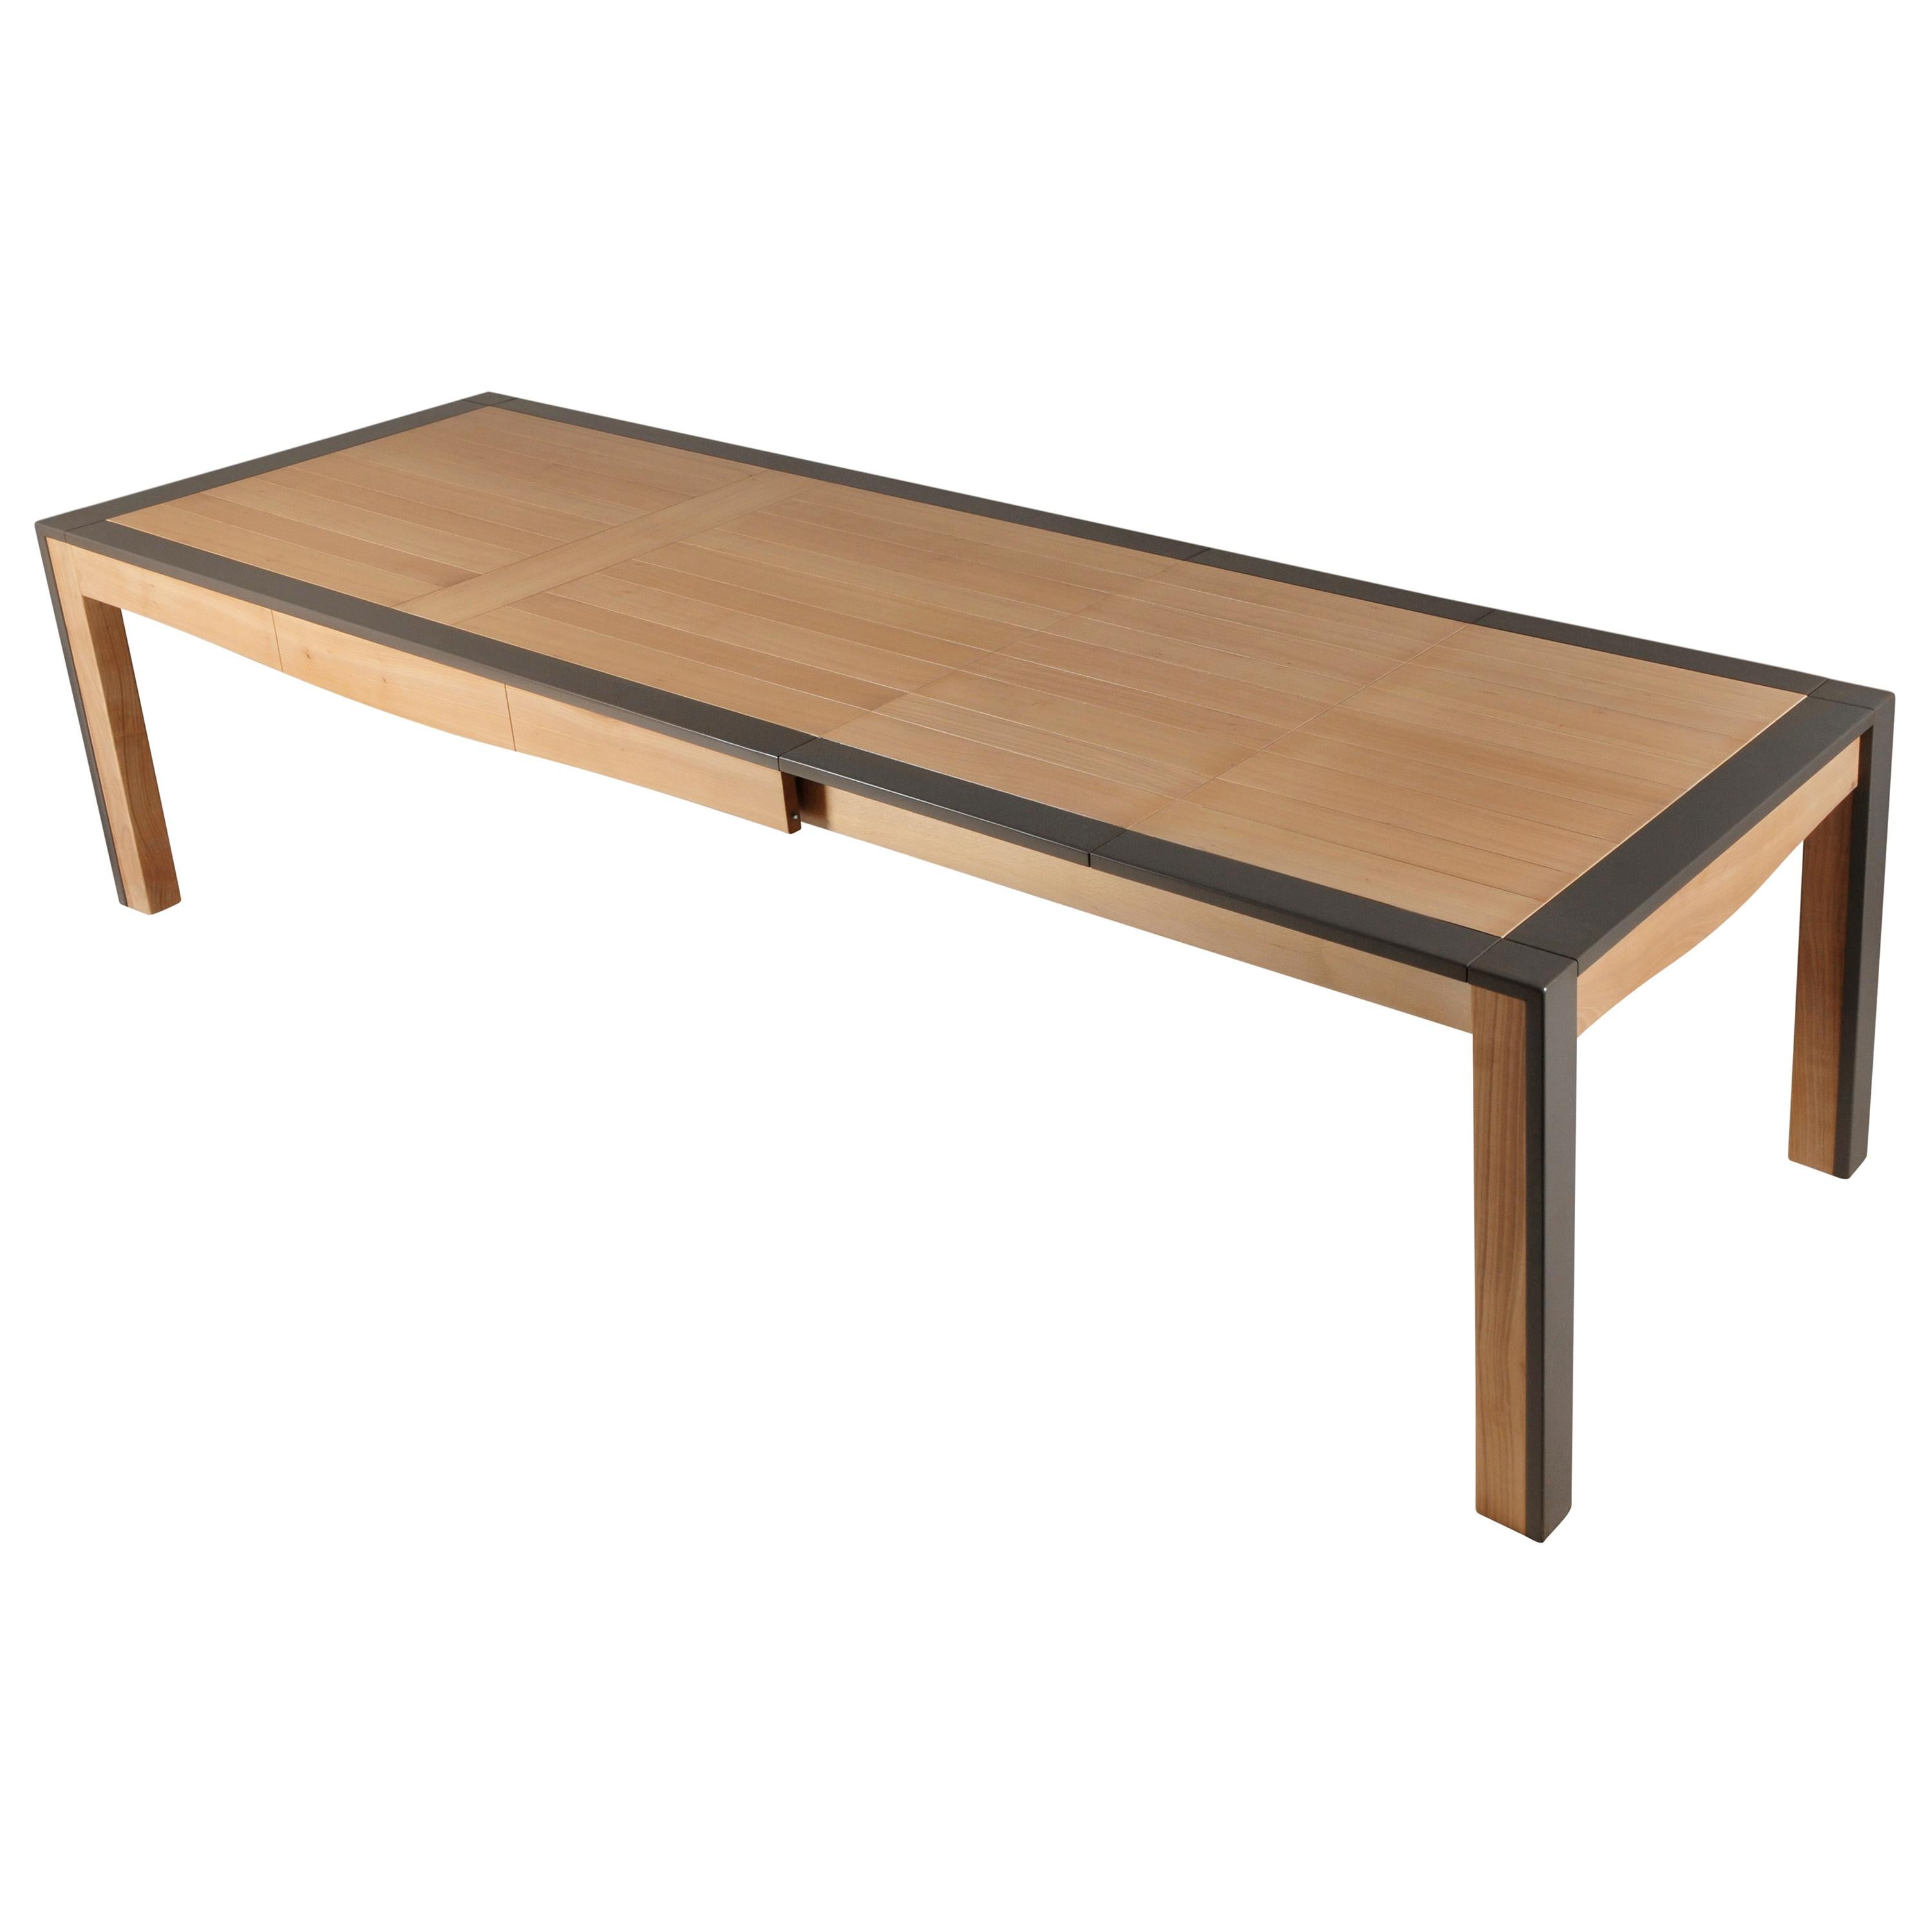 Dieser rechteckige Esstisch ist aus Kirschbaumholz gefertigt und wurde von Christophe Lecomte, einem französischen Designer, entworfen. Christophe kombiniert gerne moderne Linien mit sanften Kurven unter der Tischplatte.


Das